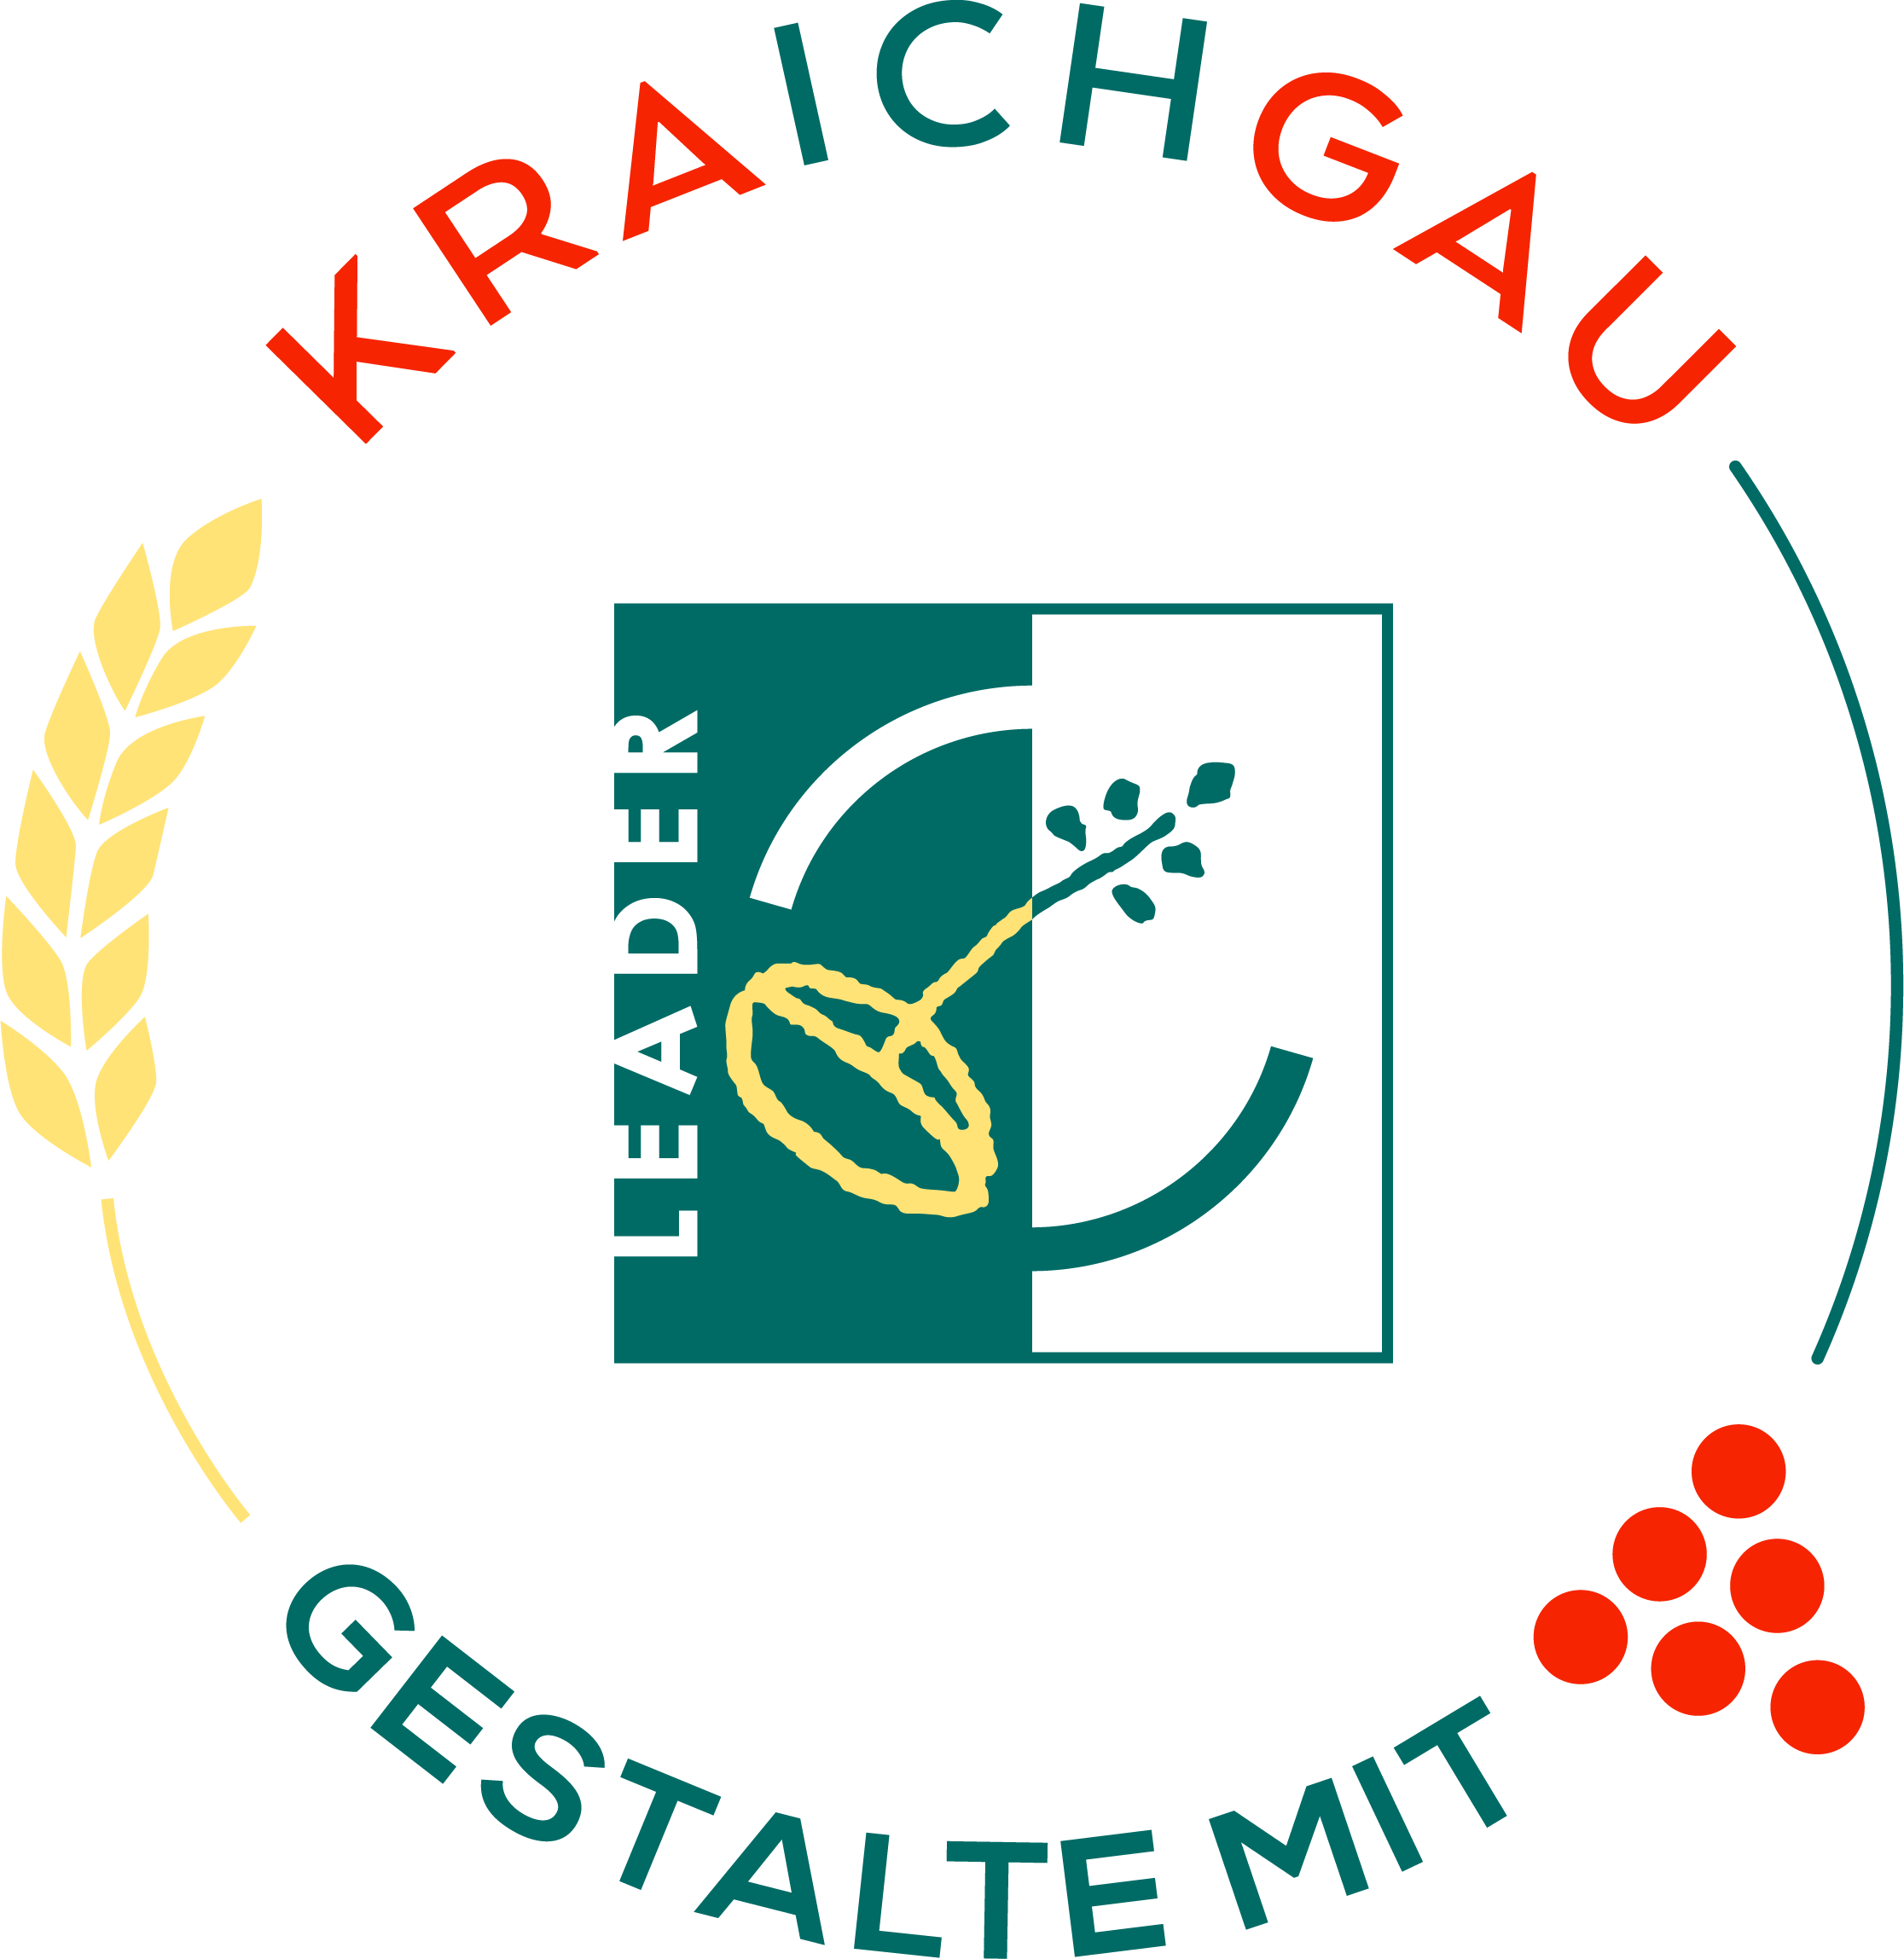 KRAichGAU-GESTALTE MIT